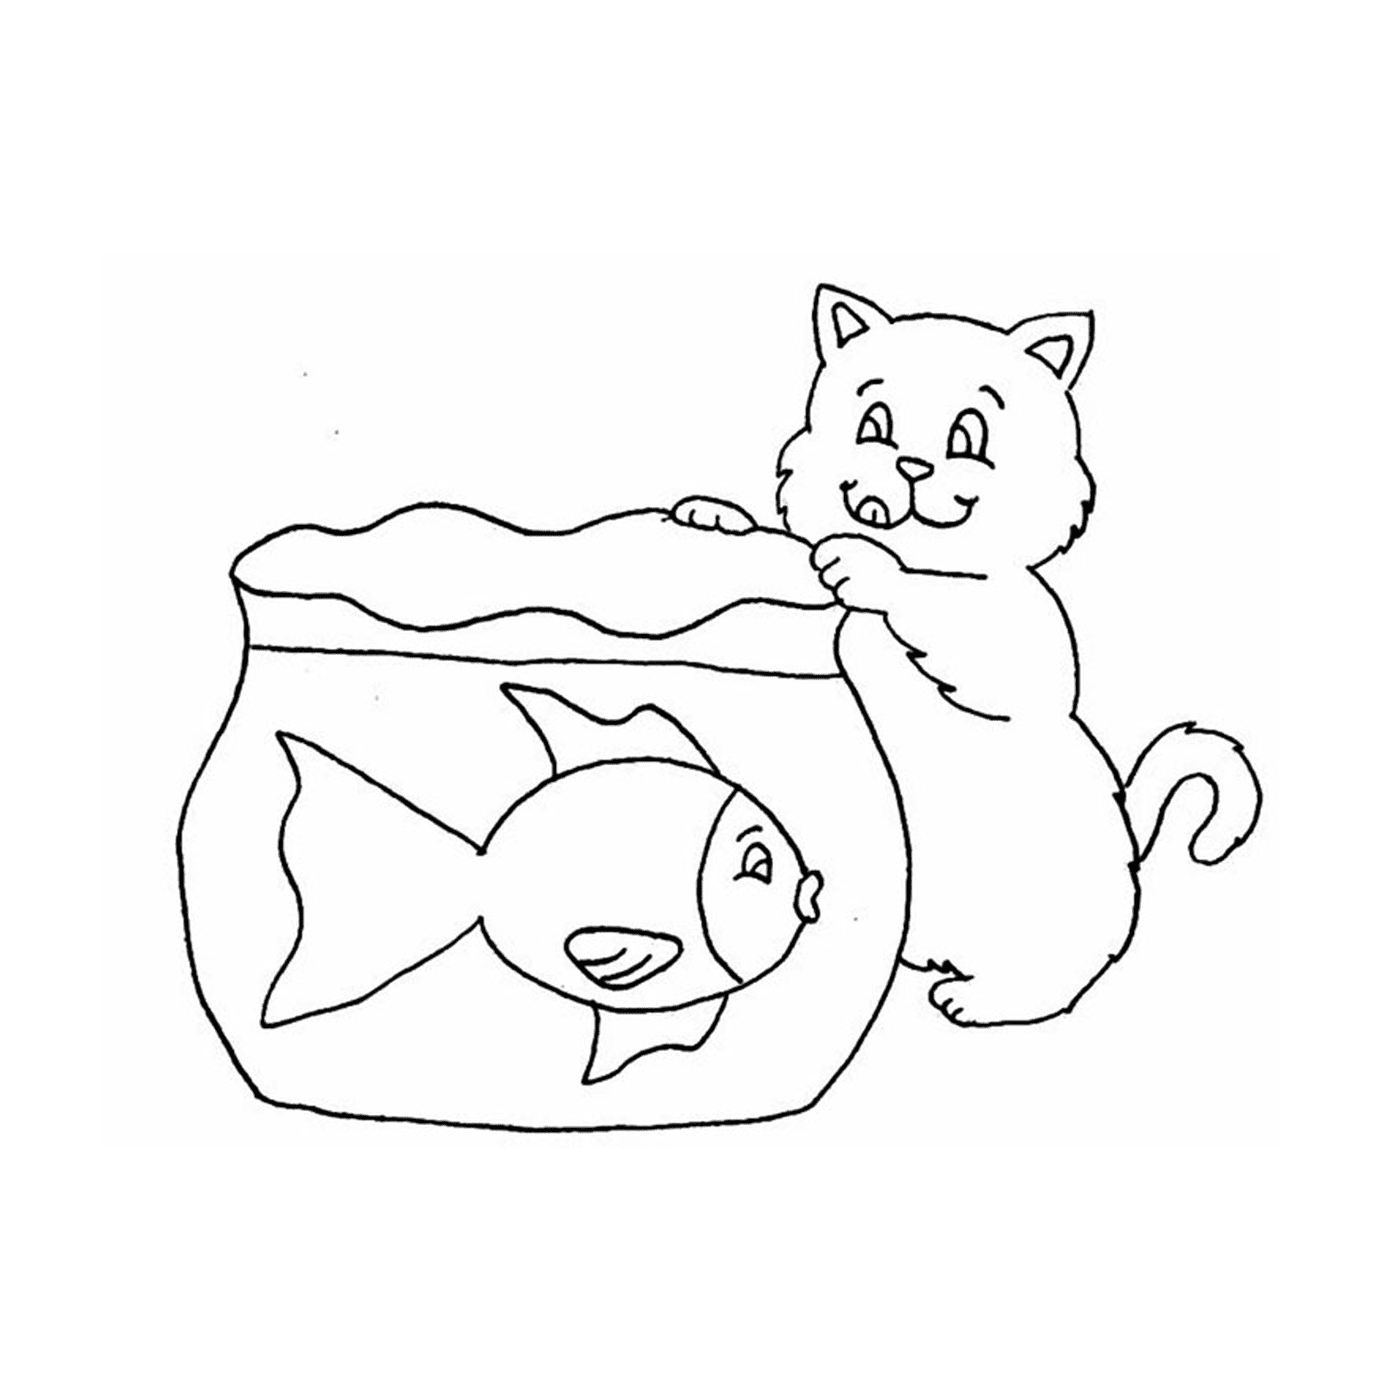  Кошка смотрит на рыбу в банке 